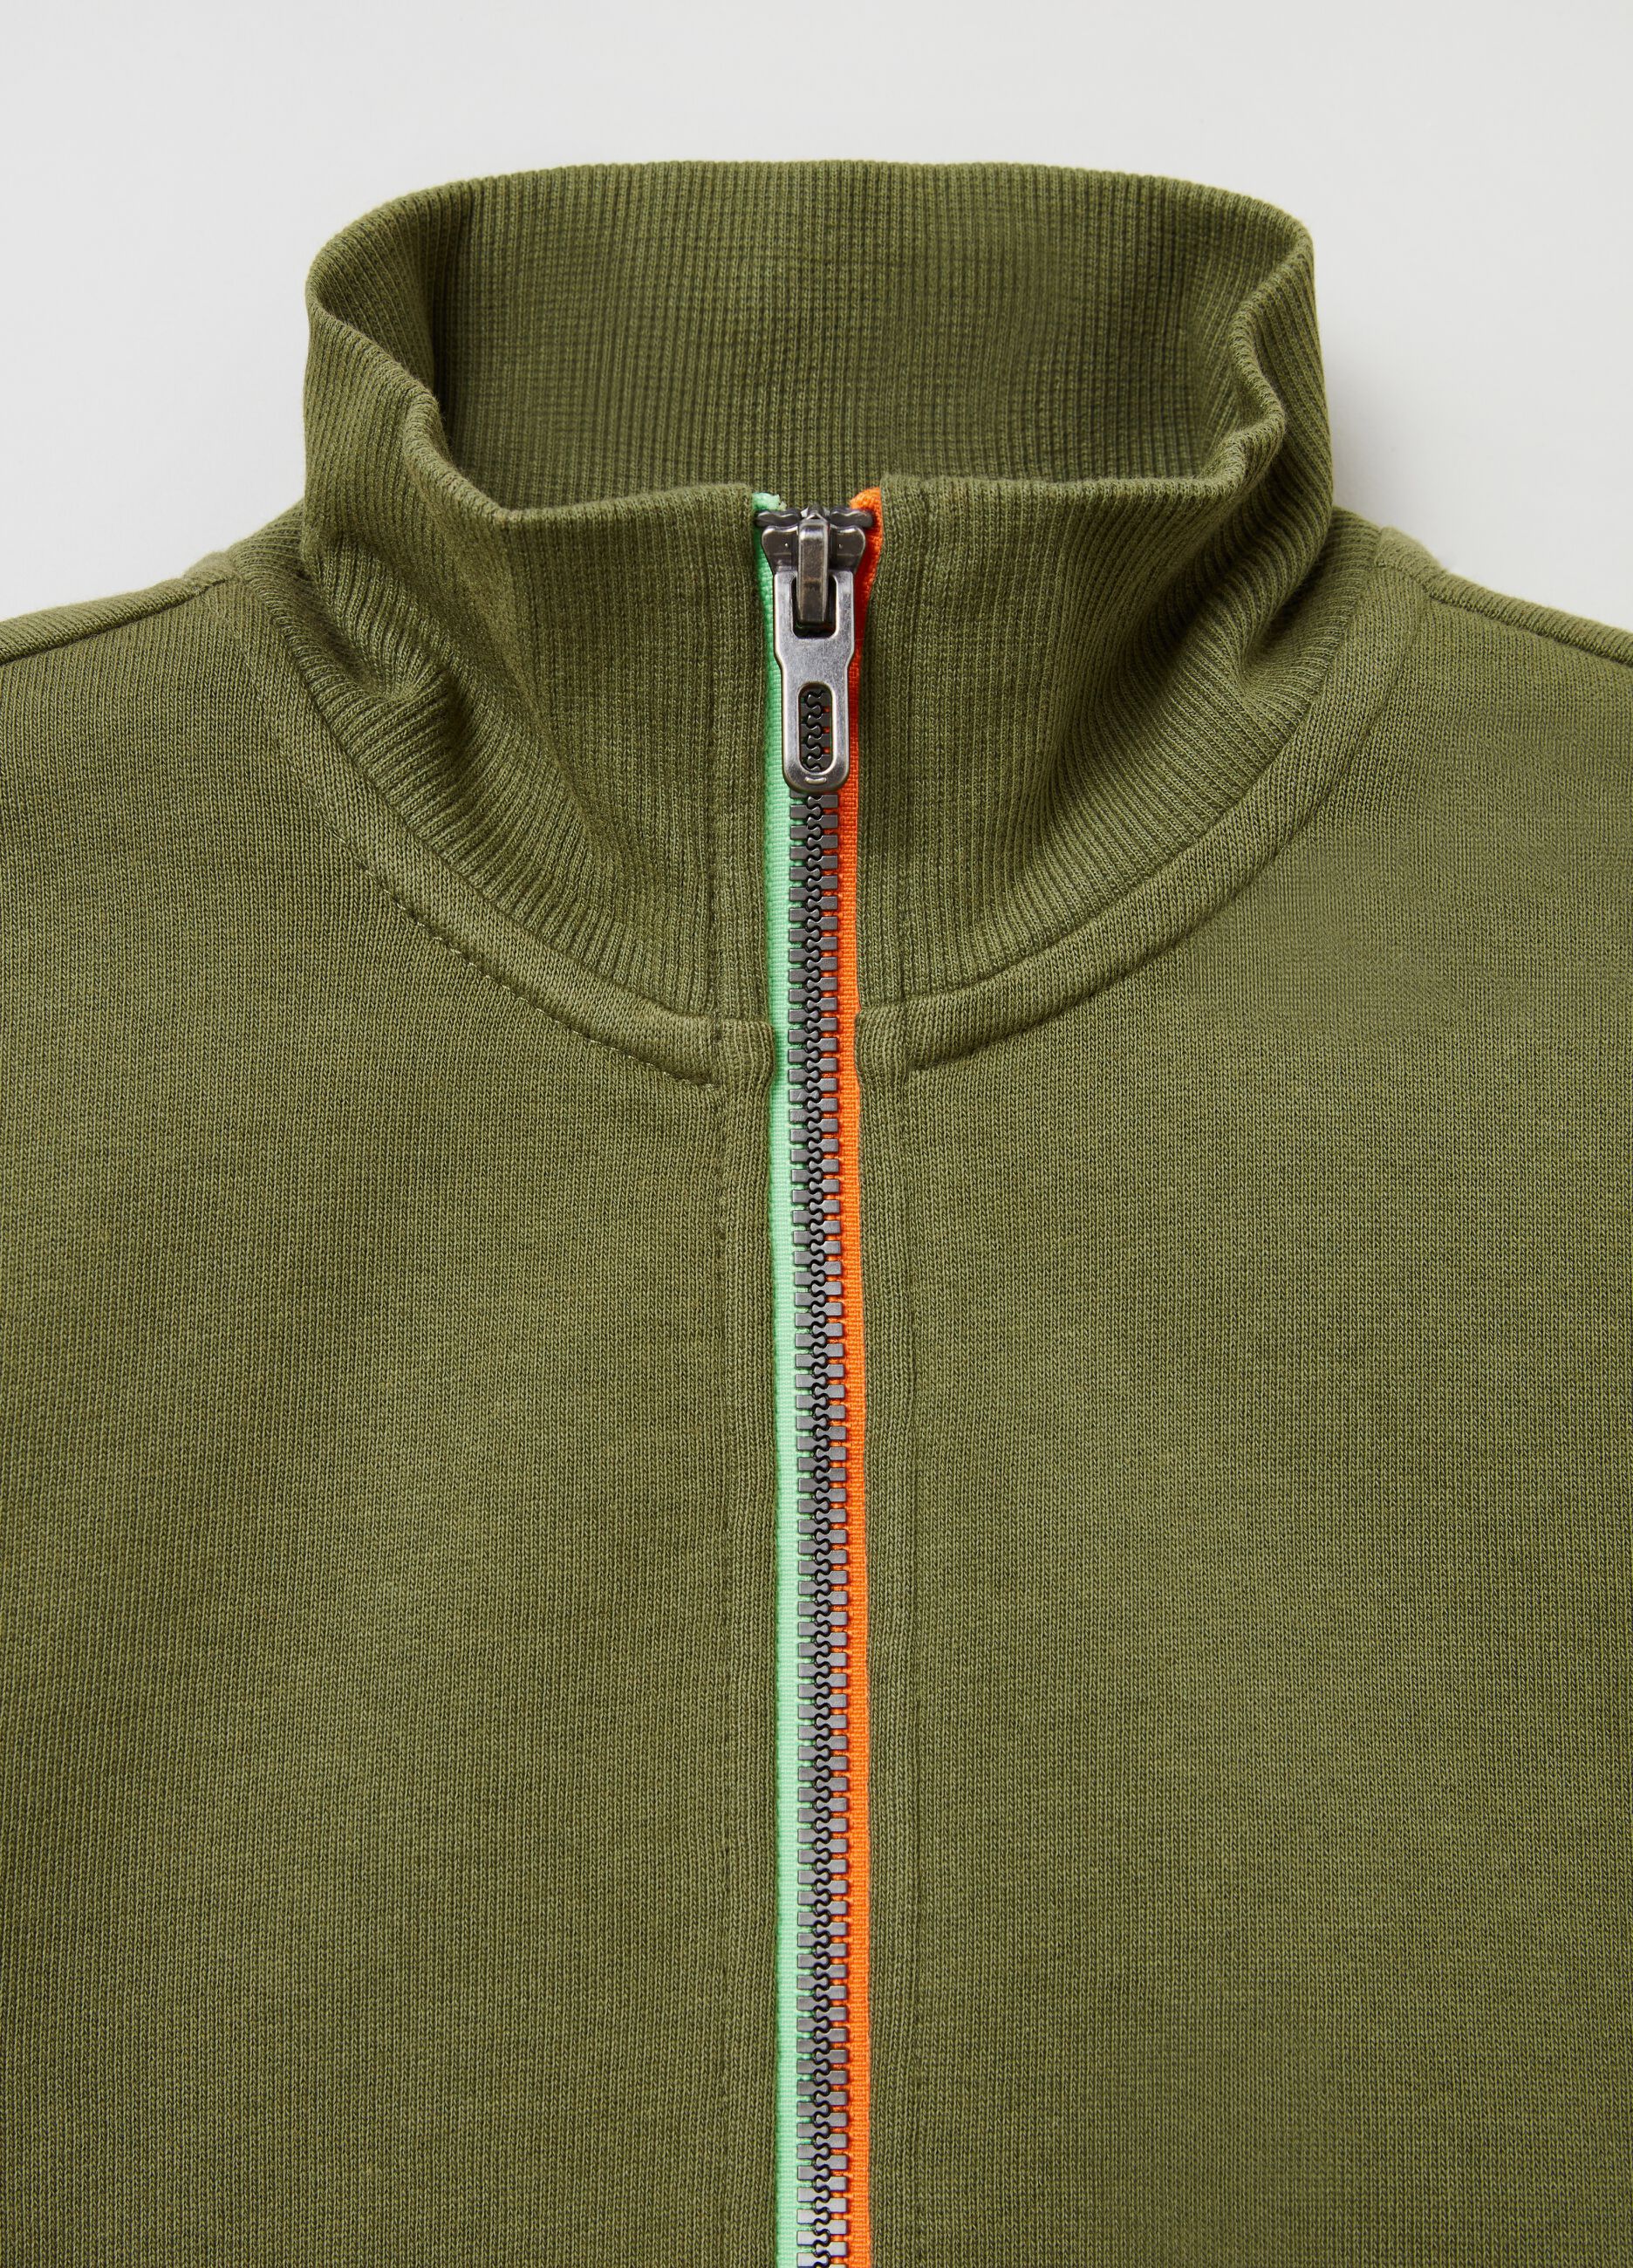 Plush full-zip sweatshirt with high neck